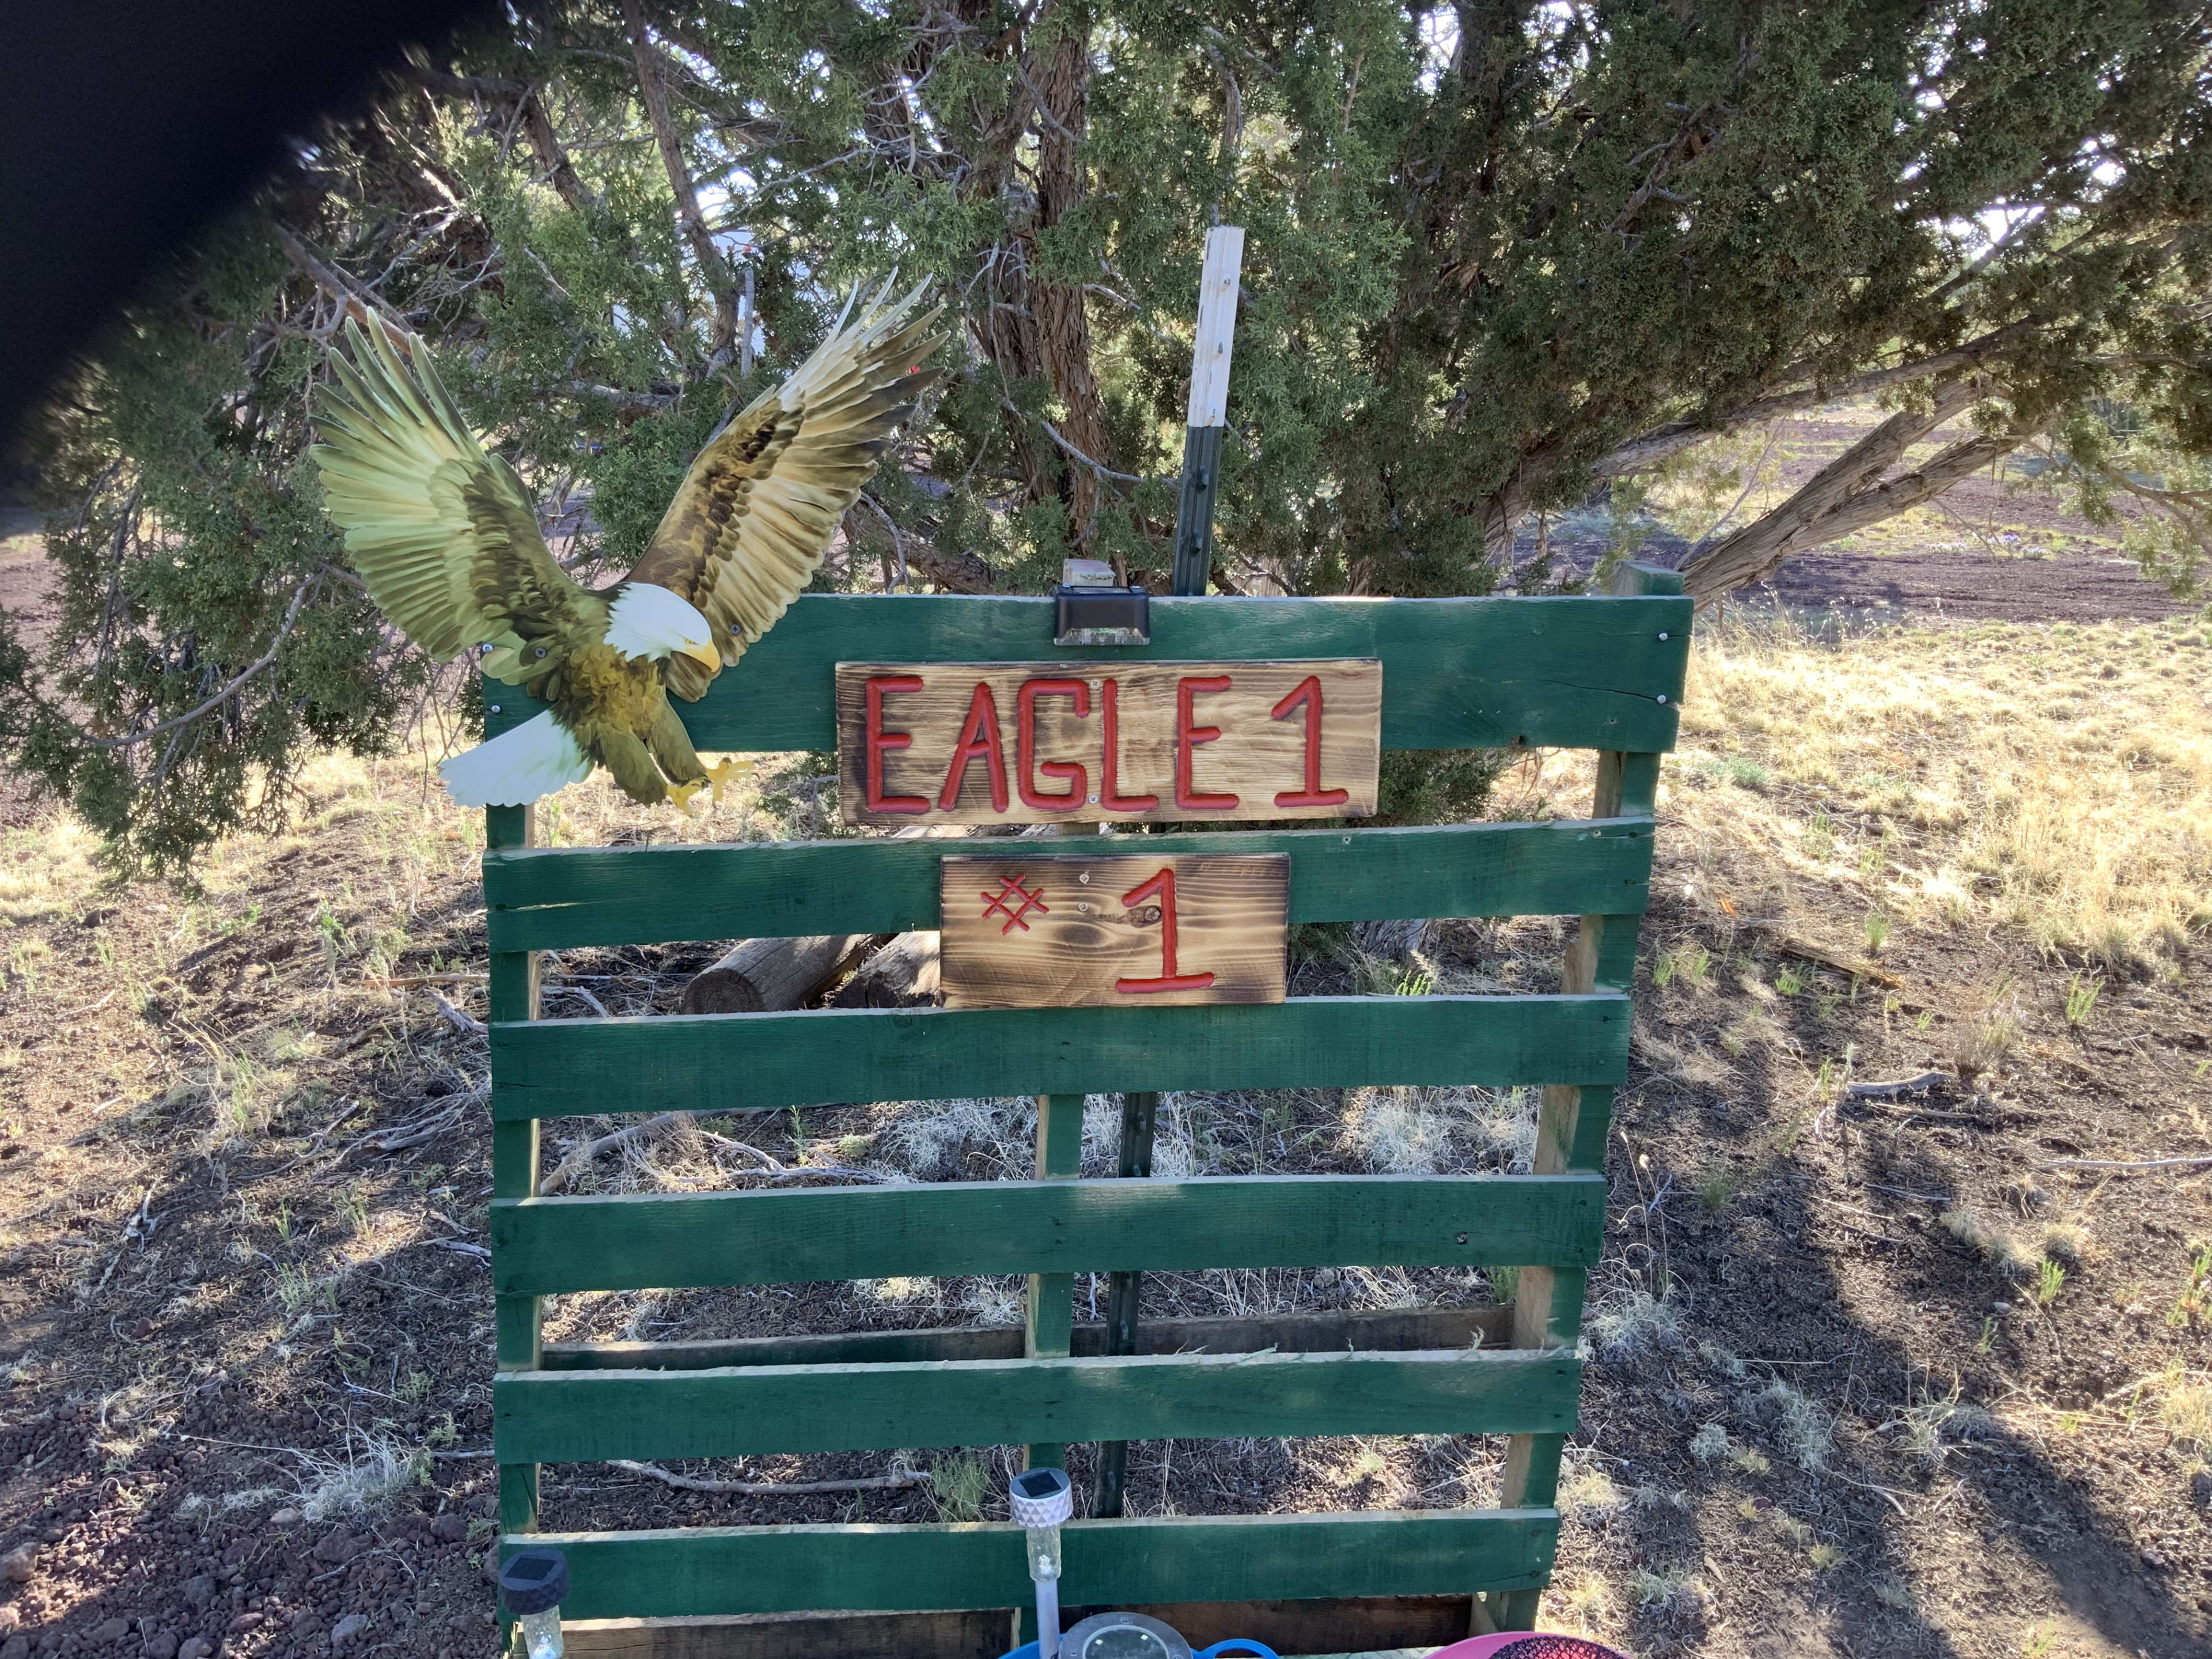 Entrance to Eagle1